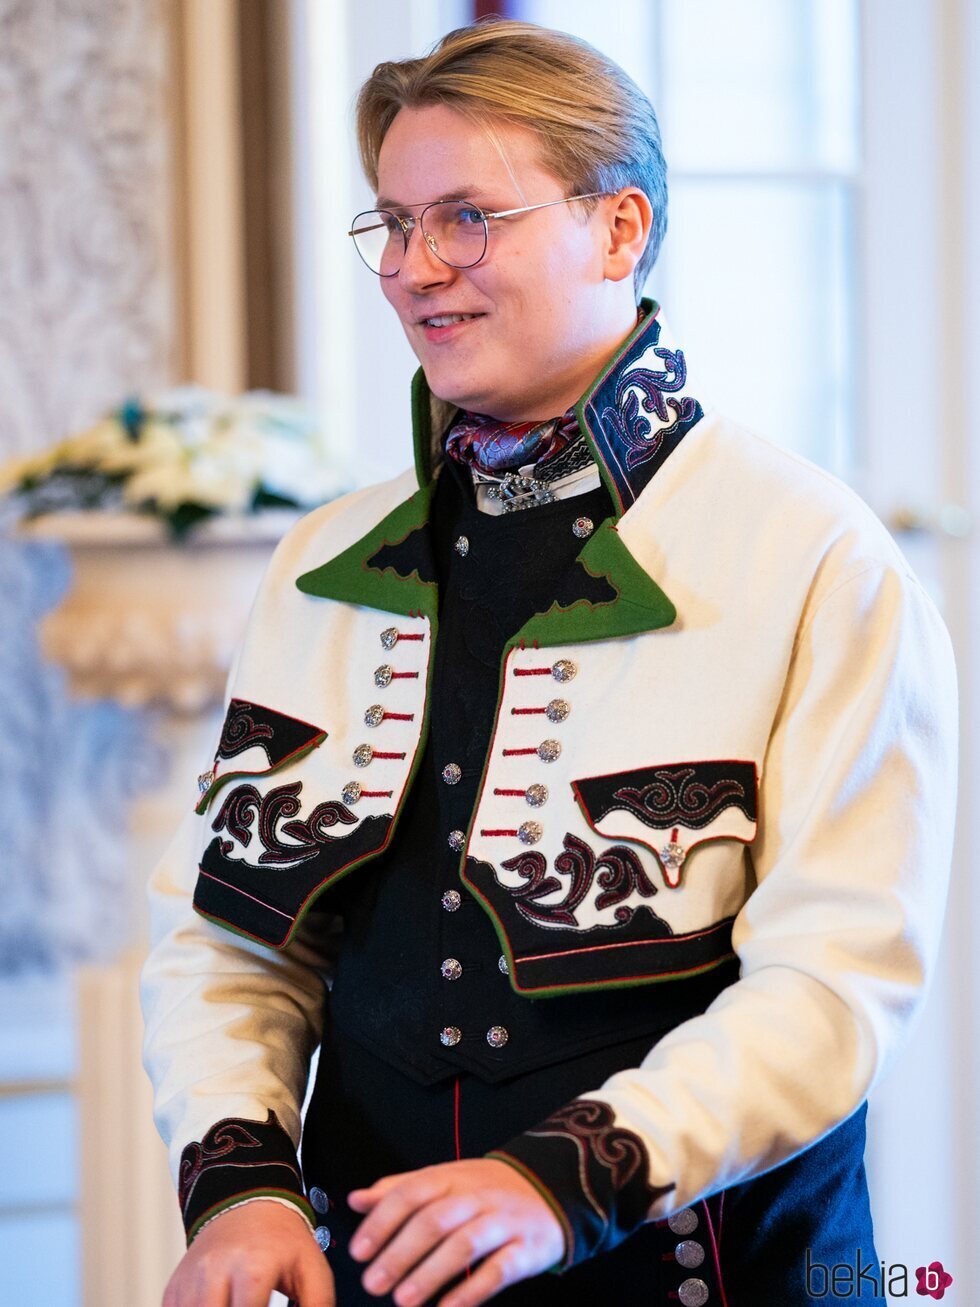 Sverre Magnus de Noruega en su 18 cumpleaños